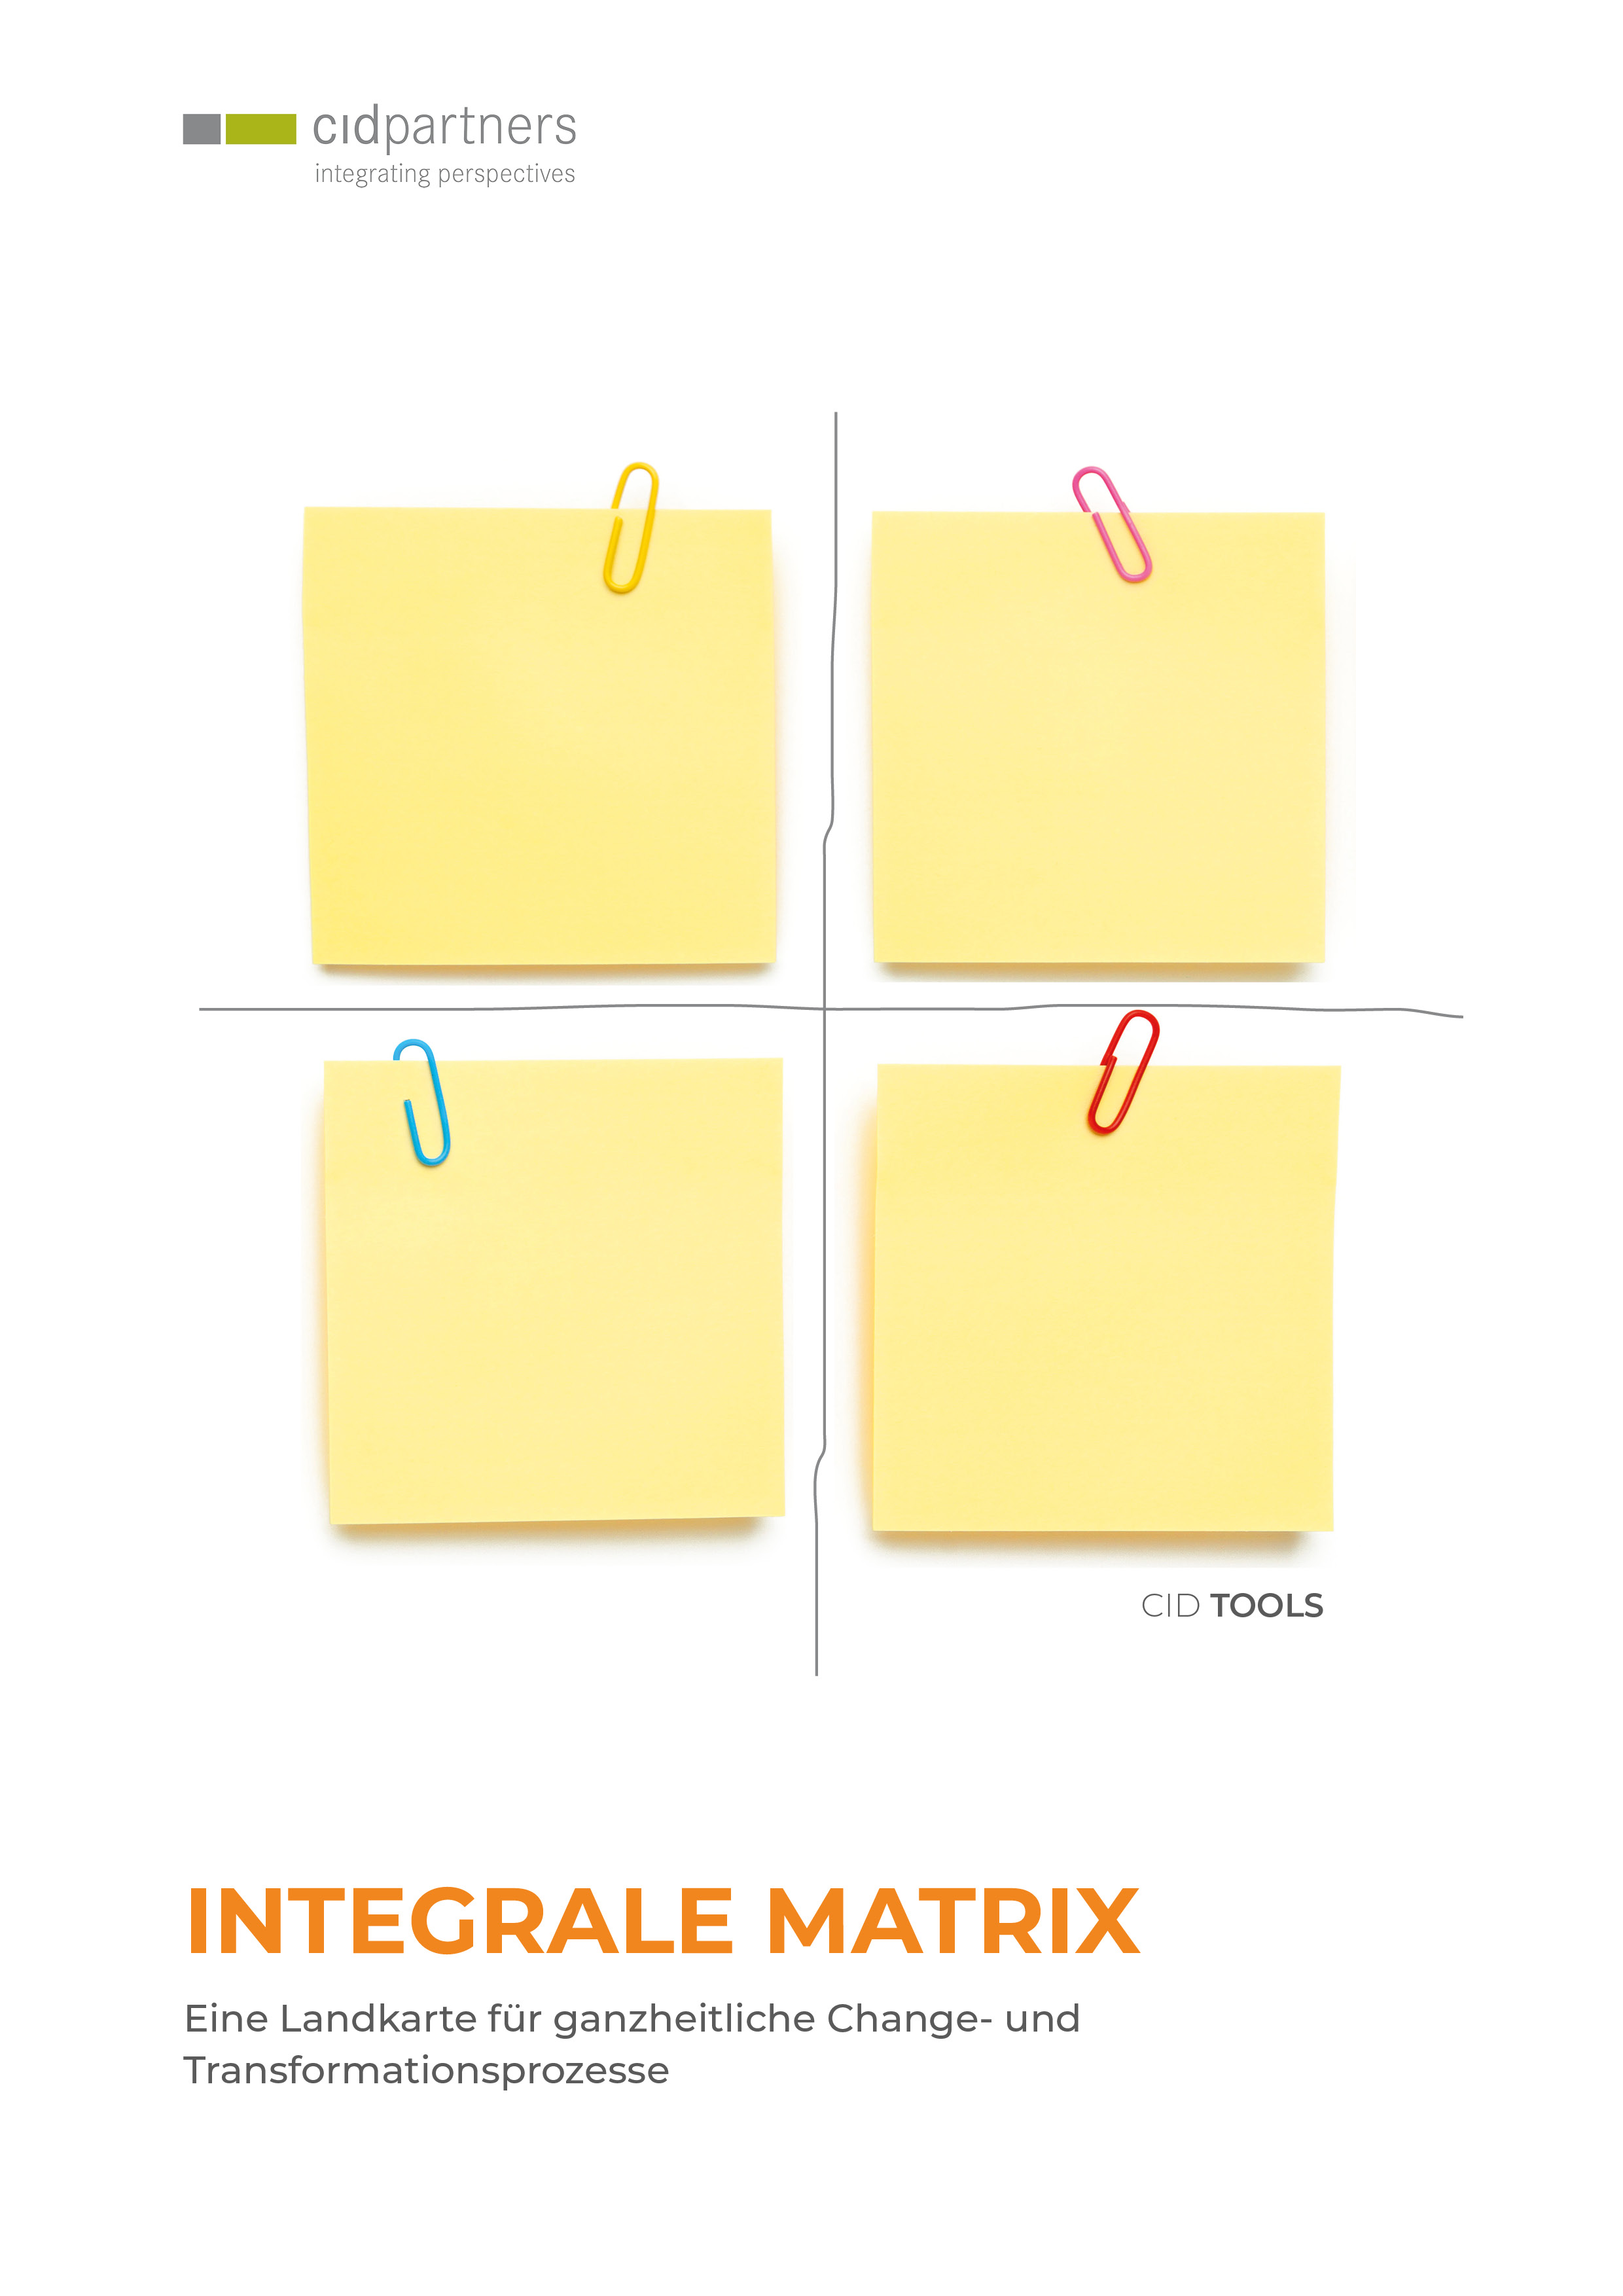 cidTool: Integrale Matrix - Eine Landkarte für ganzheitliche Change- und Transformationsprozesse